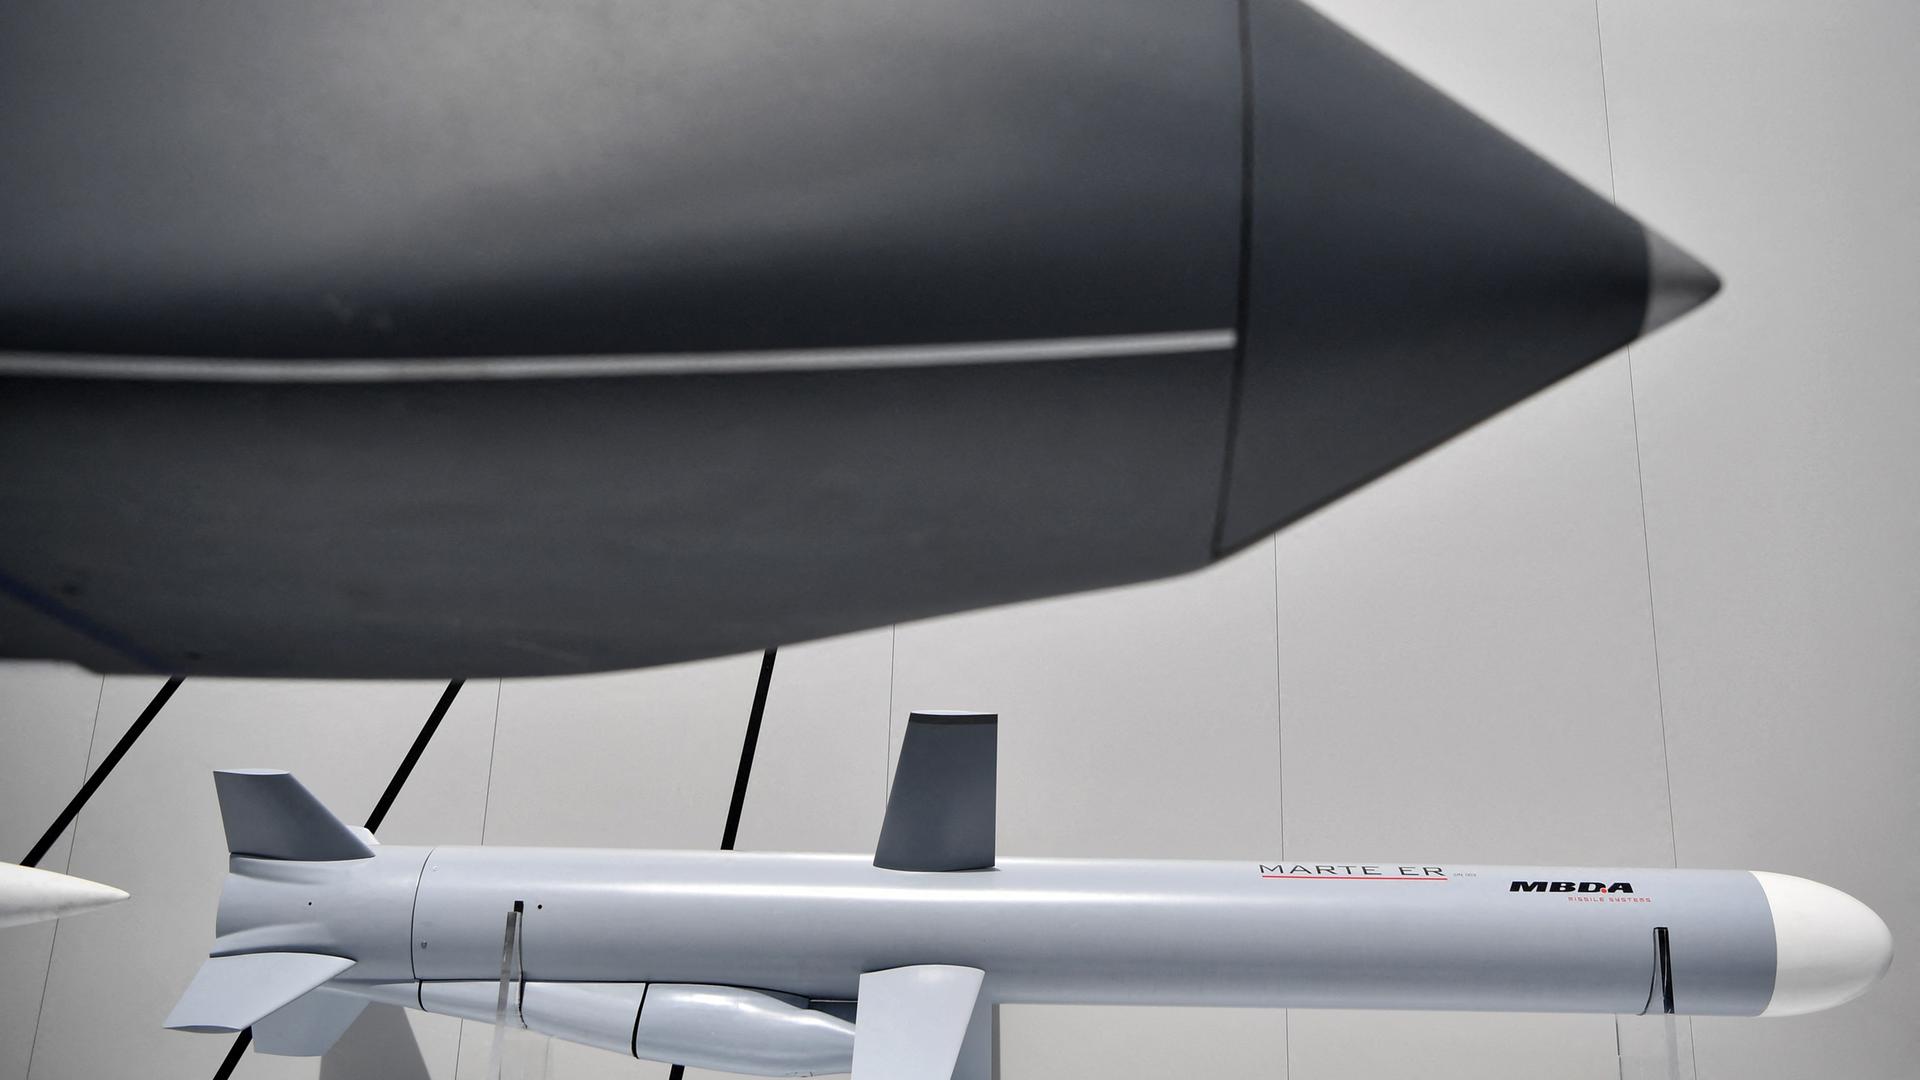 Der Kopf der Rakete Storm Shadow, darunter eine Missile, bzw. das Fernlenkgeschoss.